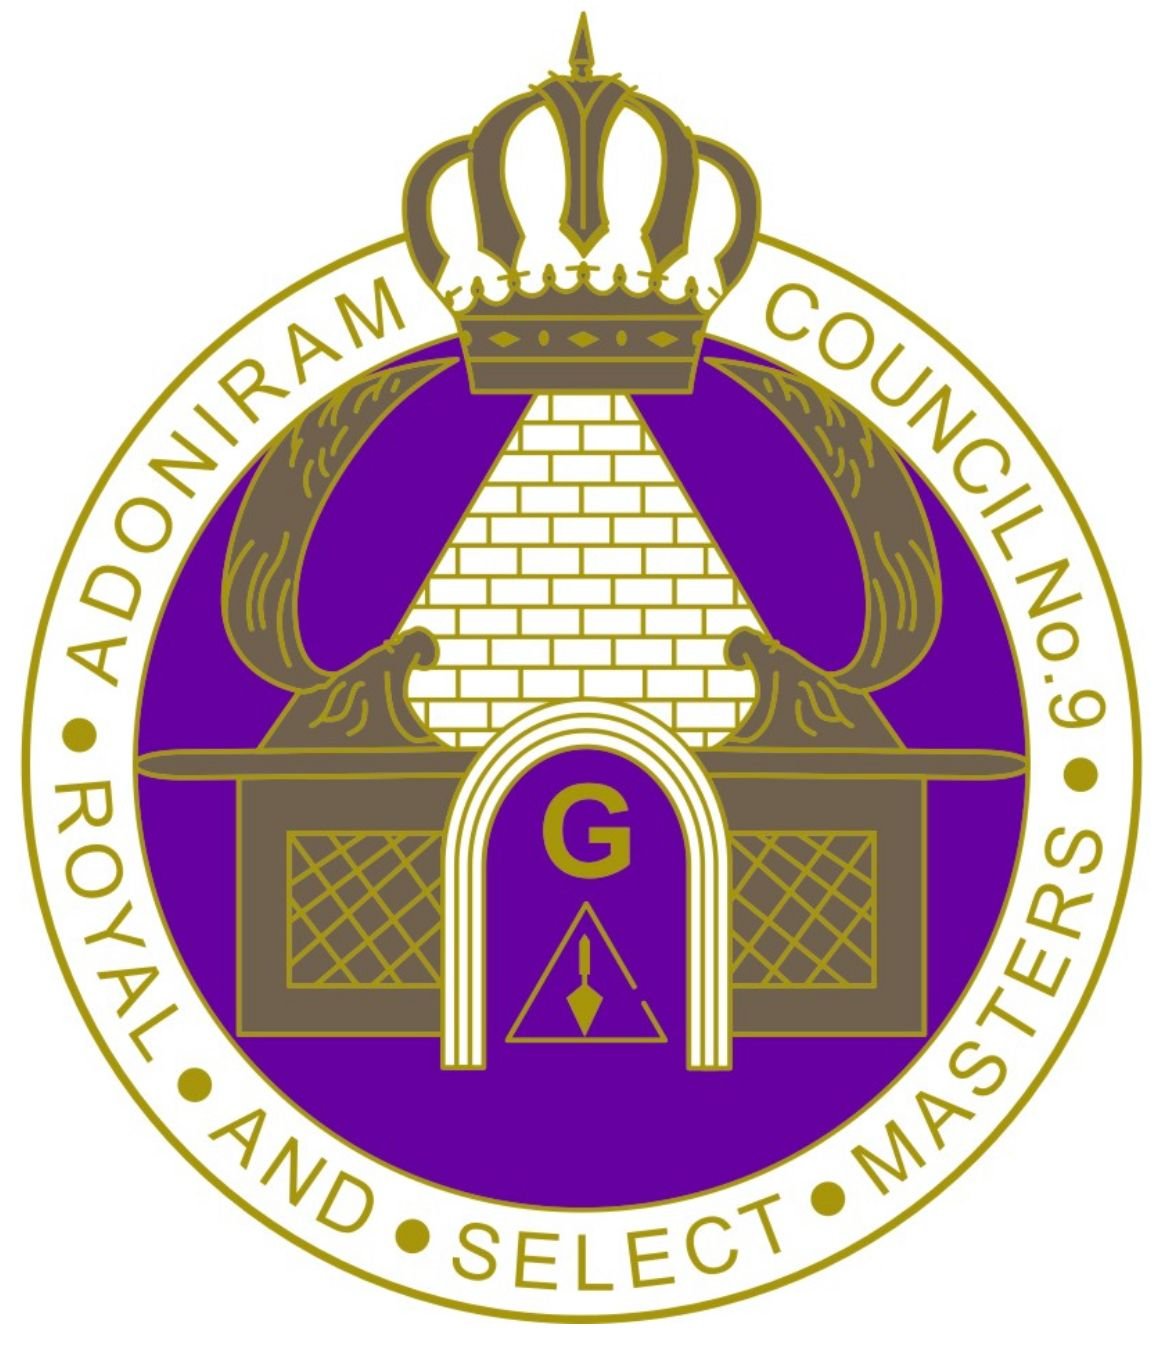 Adoniram Council No. 9